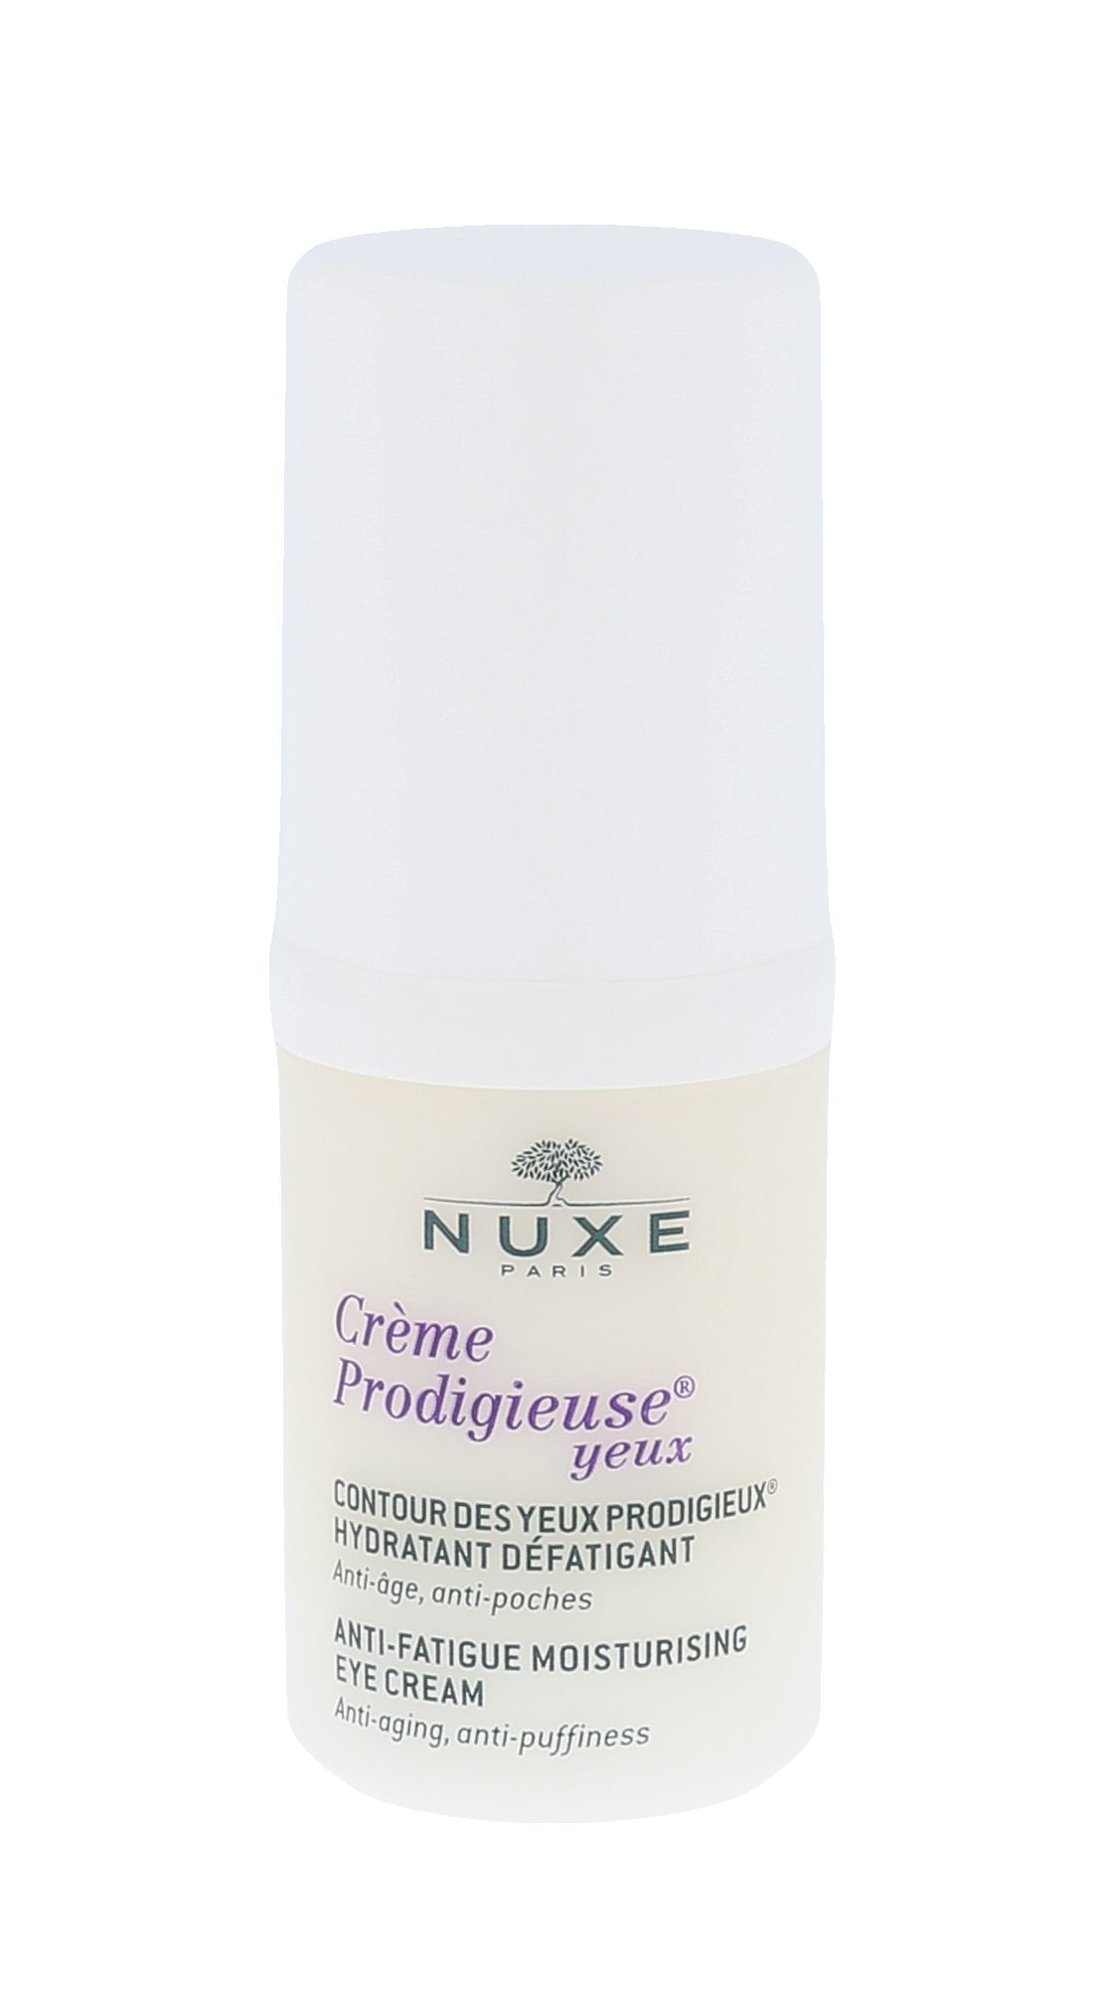 Nuxe Creme Prodigieuse Anti-Fatigue Moisturising Eye Cream 15ml paakių kremas